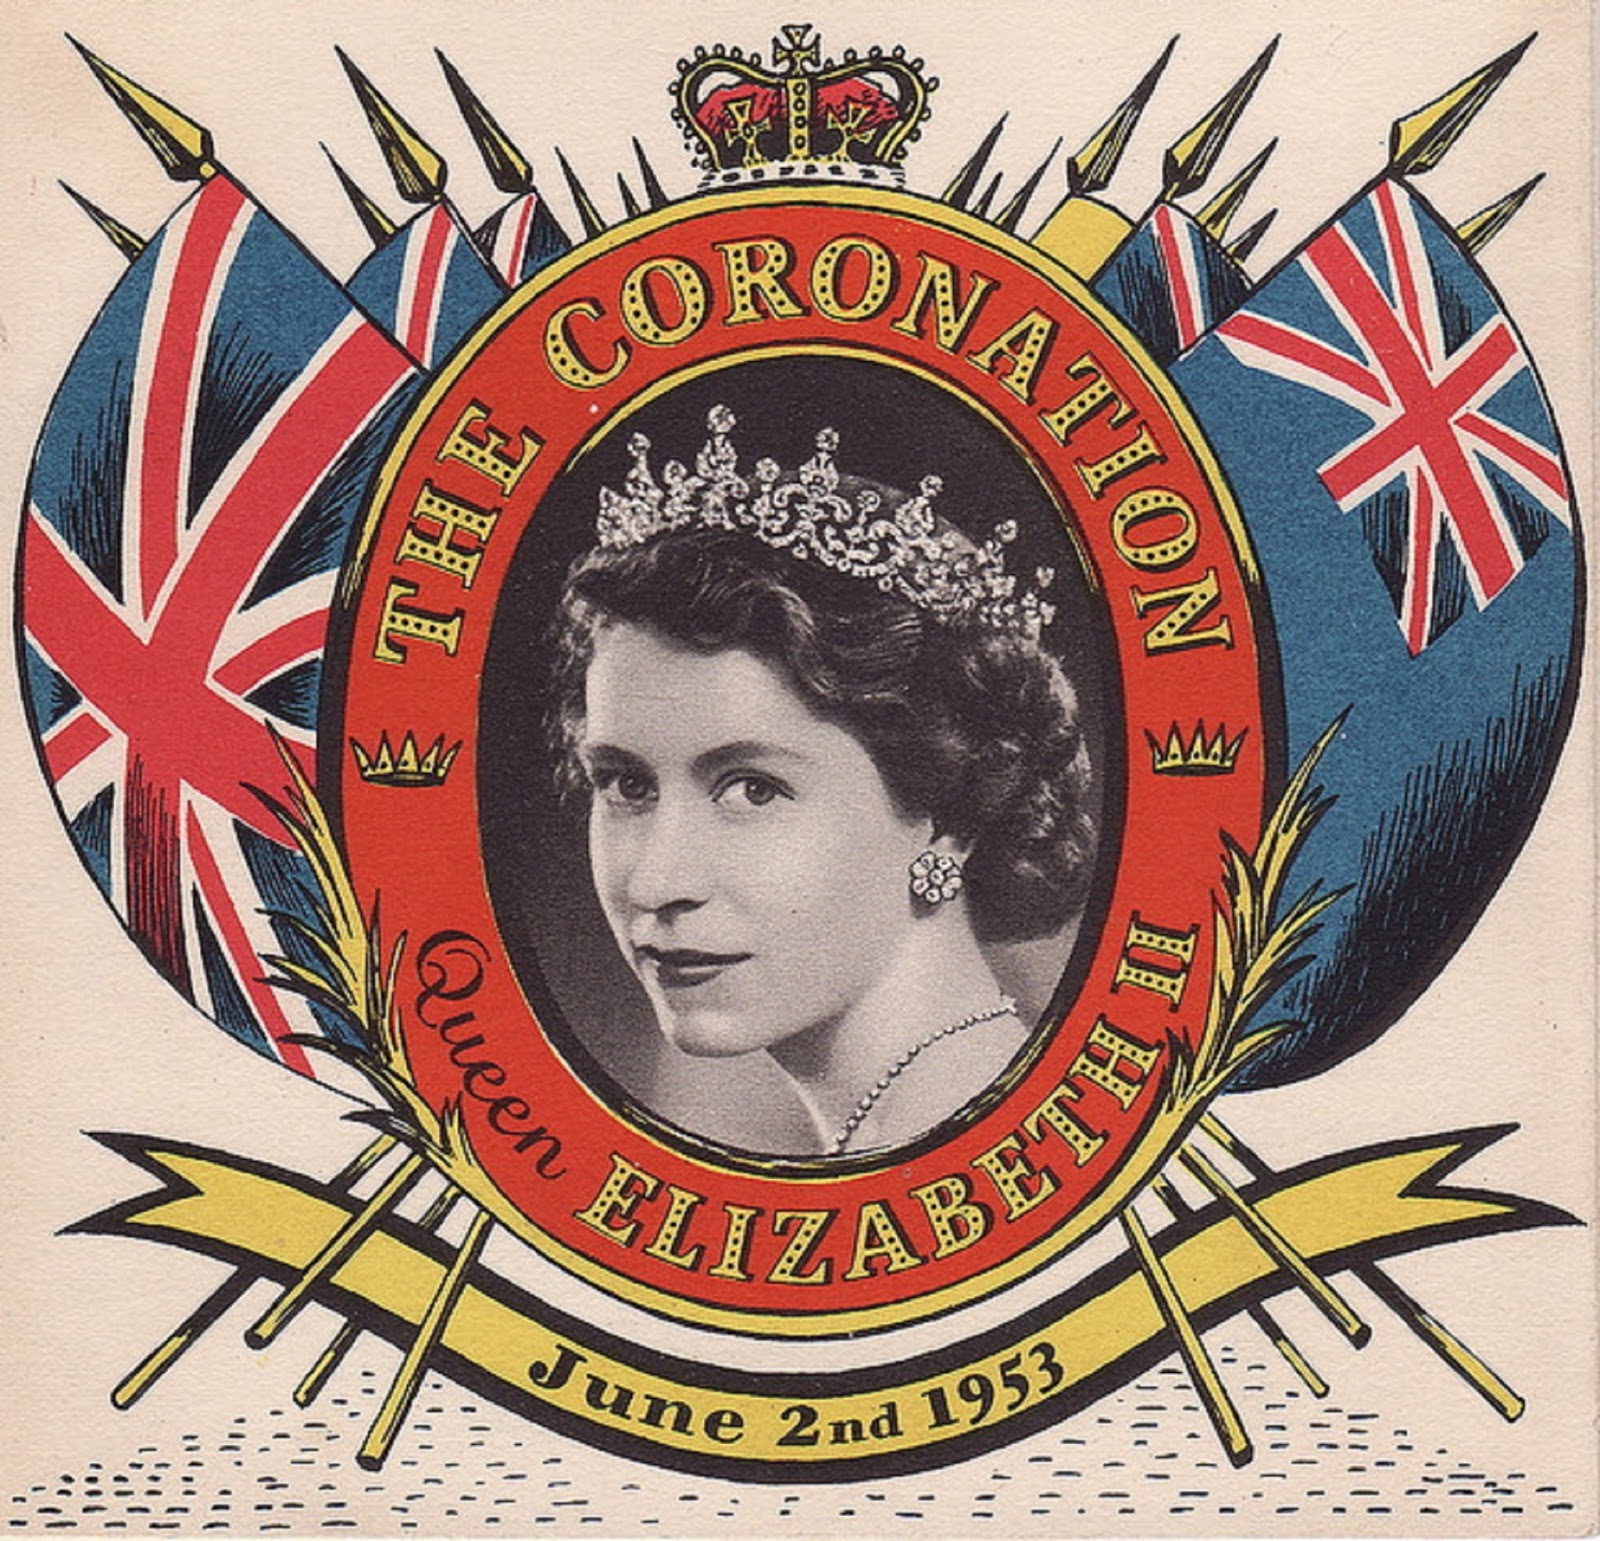 Coronation of Queen Elizabeth II, 1953